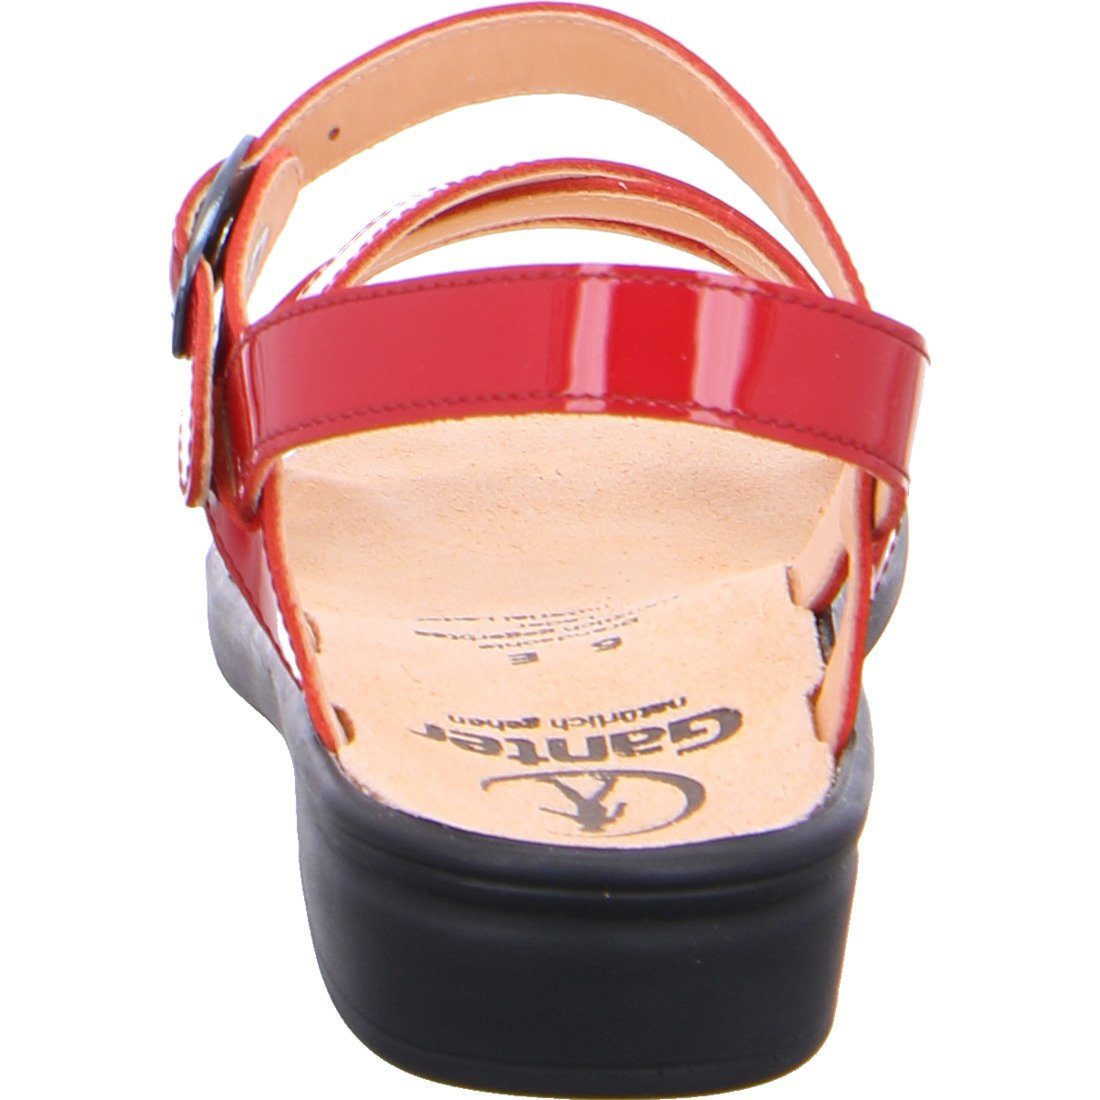 Ganter Sonnica Sandalette 049257 Schuhe, Sandalette Lackleder schwarz - Ganter